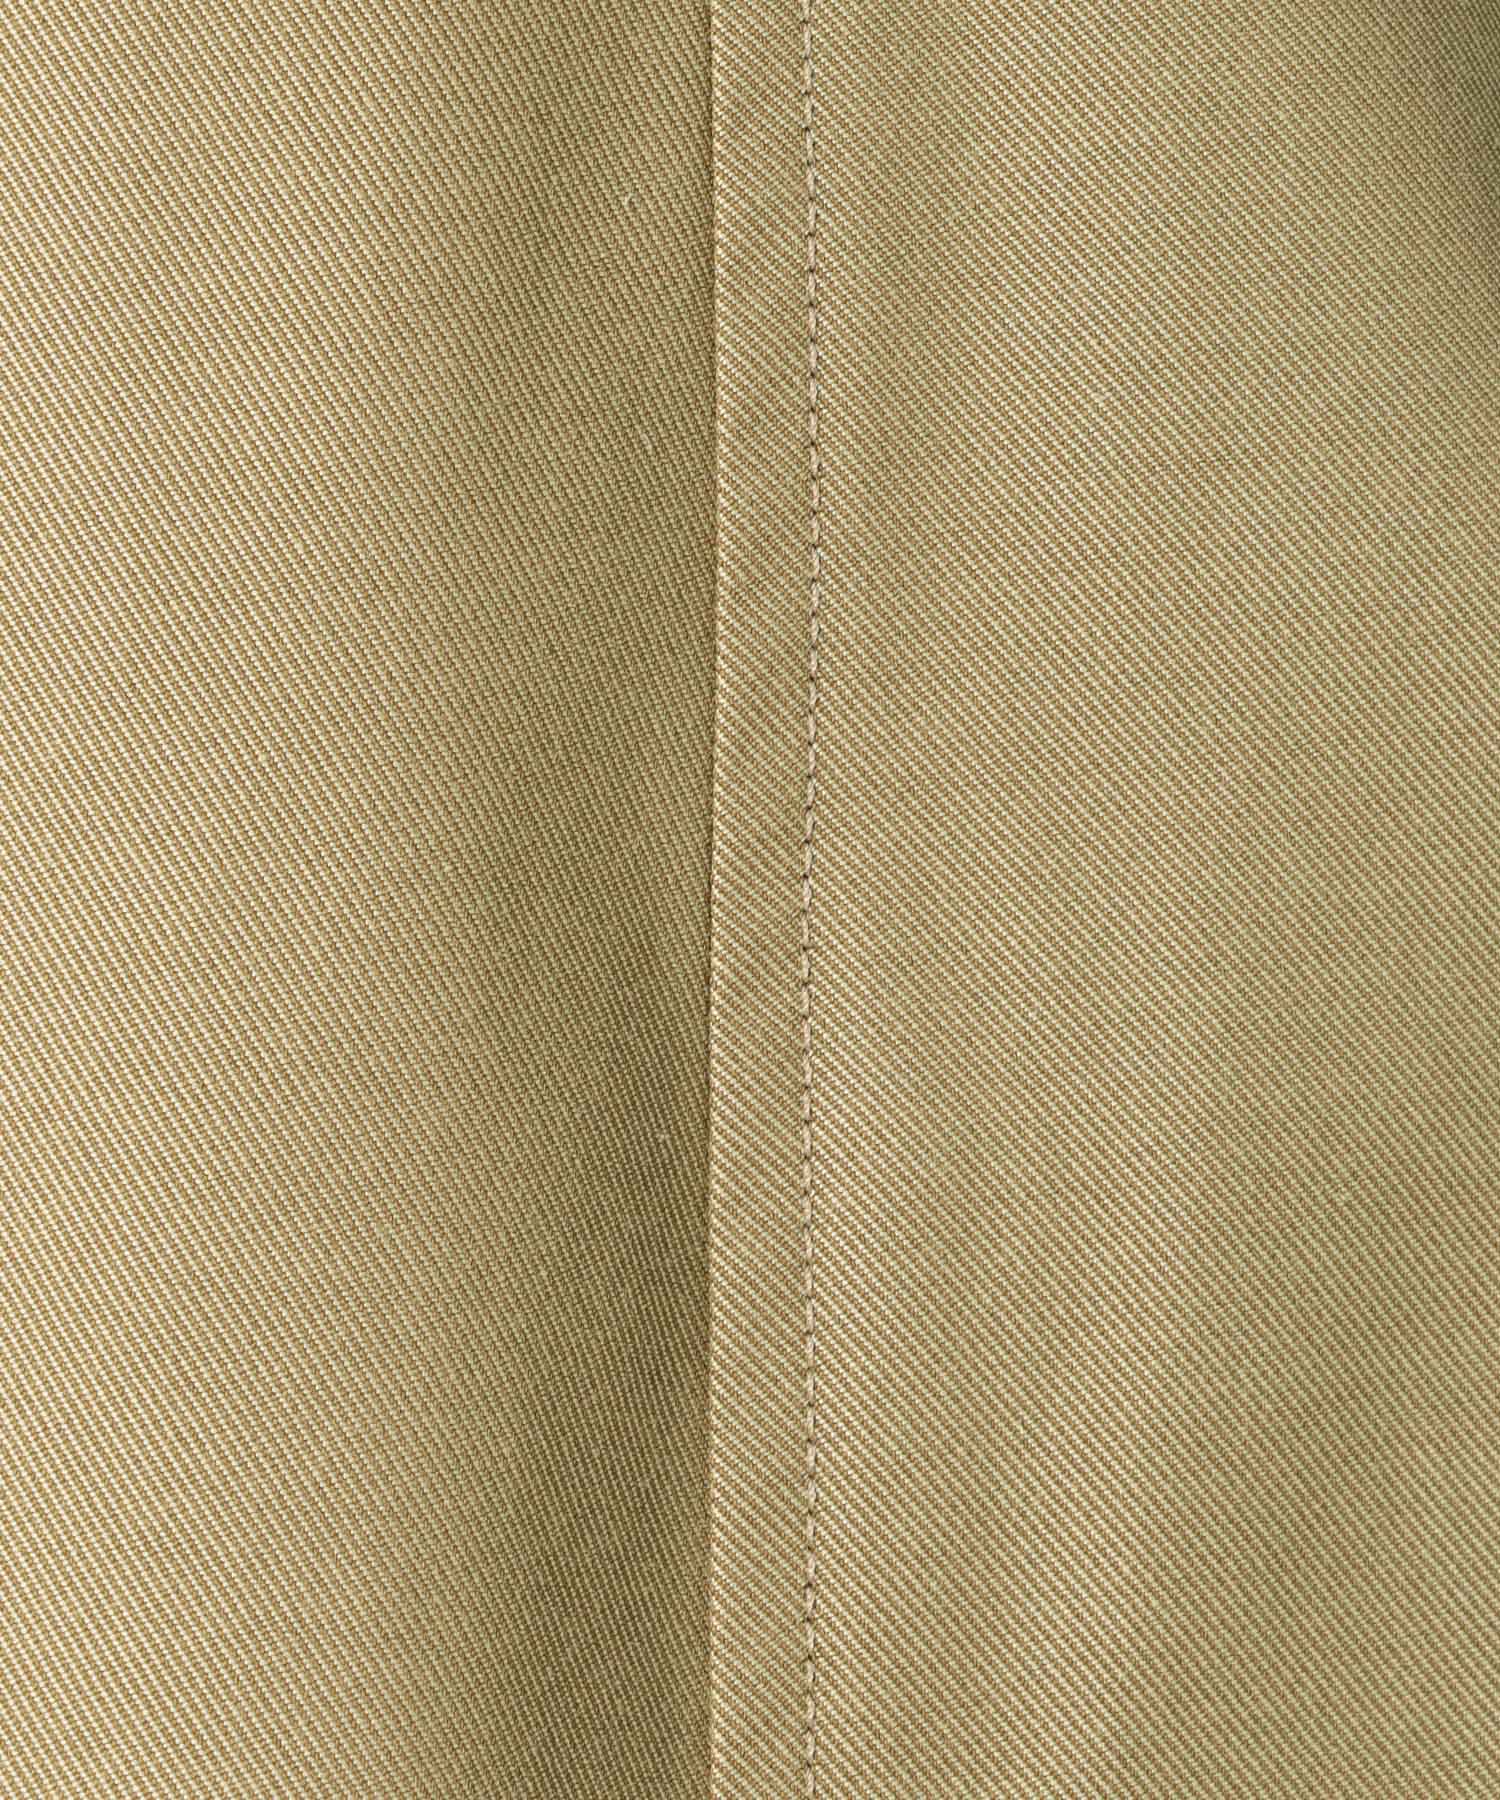 gaba design belt flare skirt